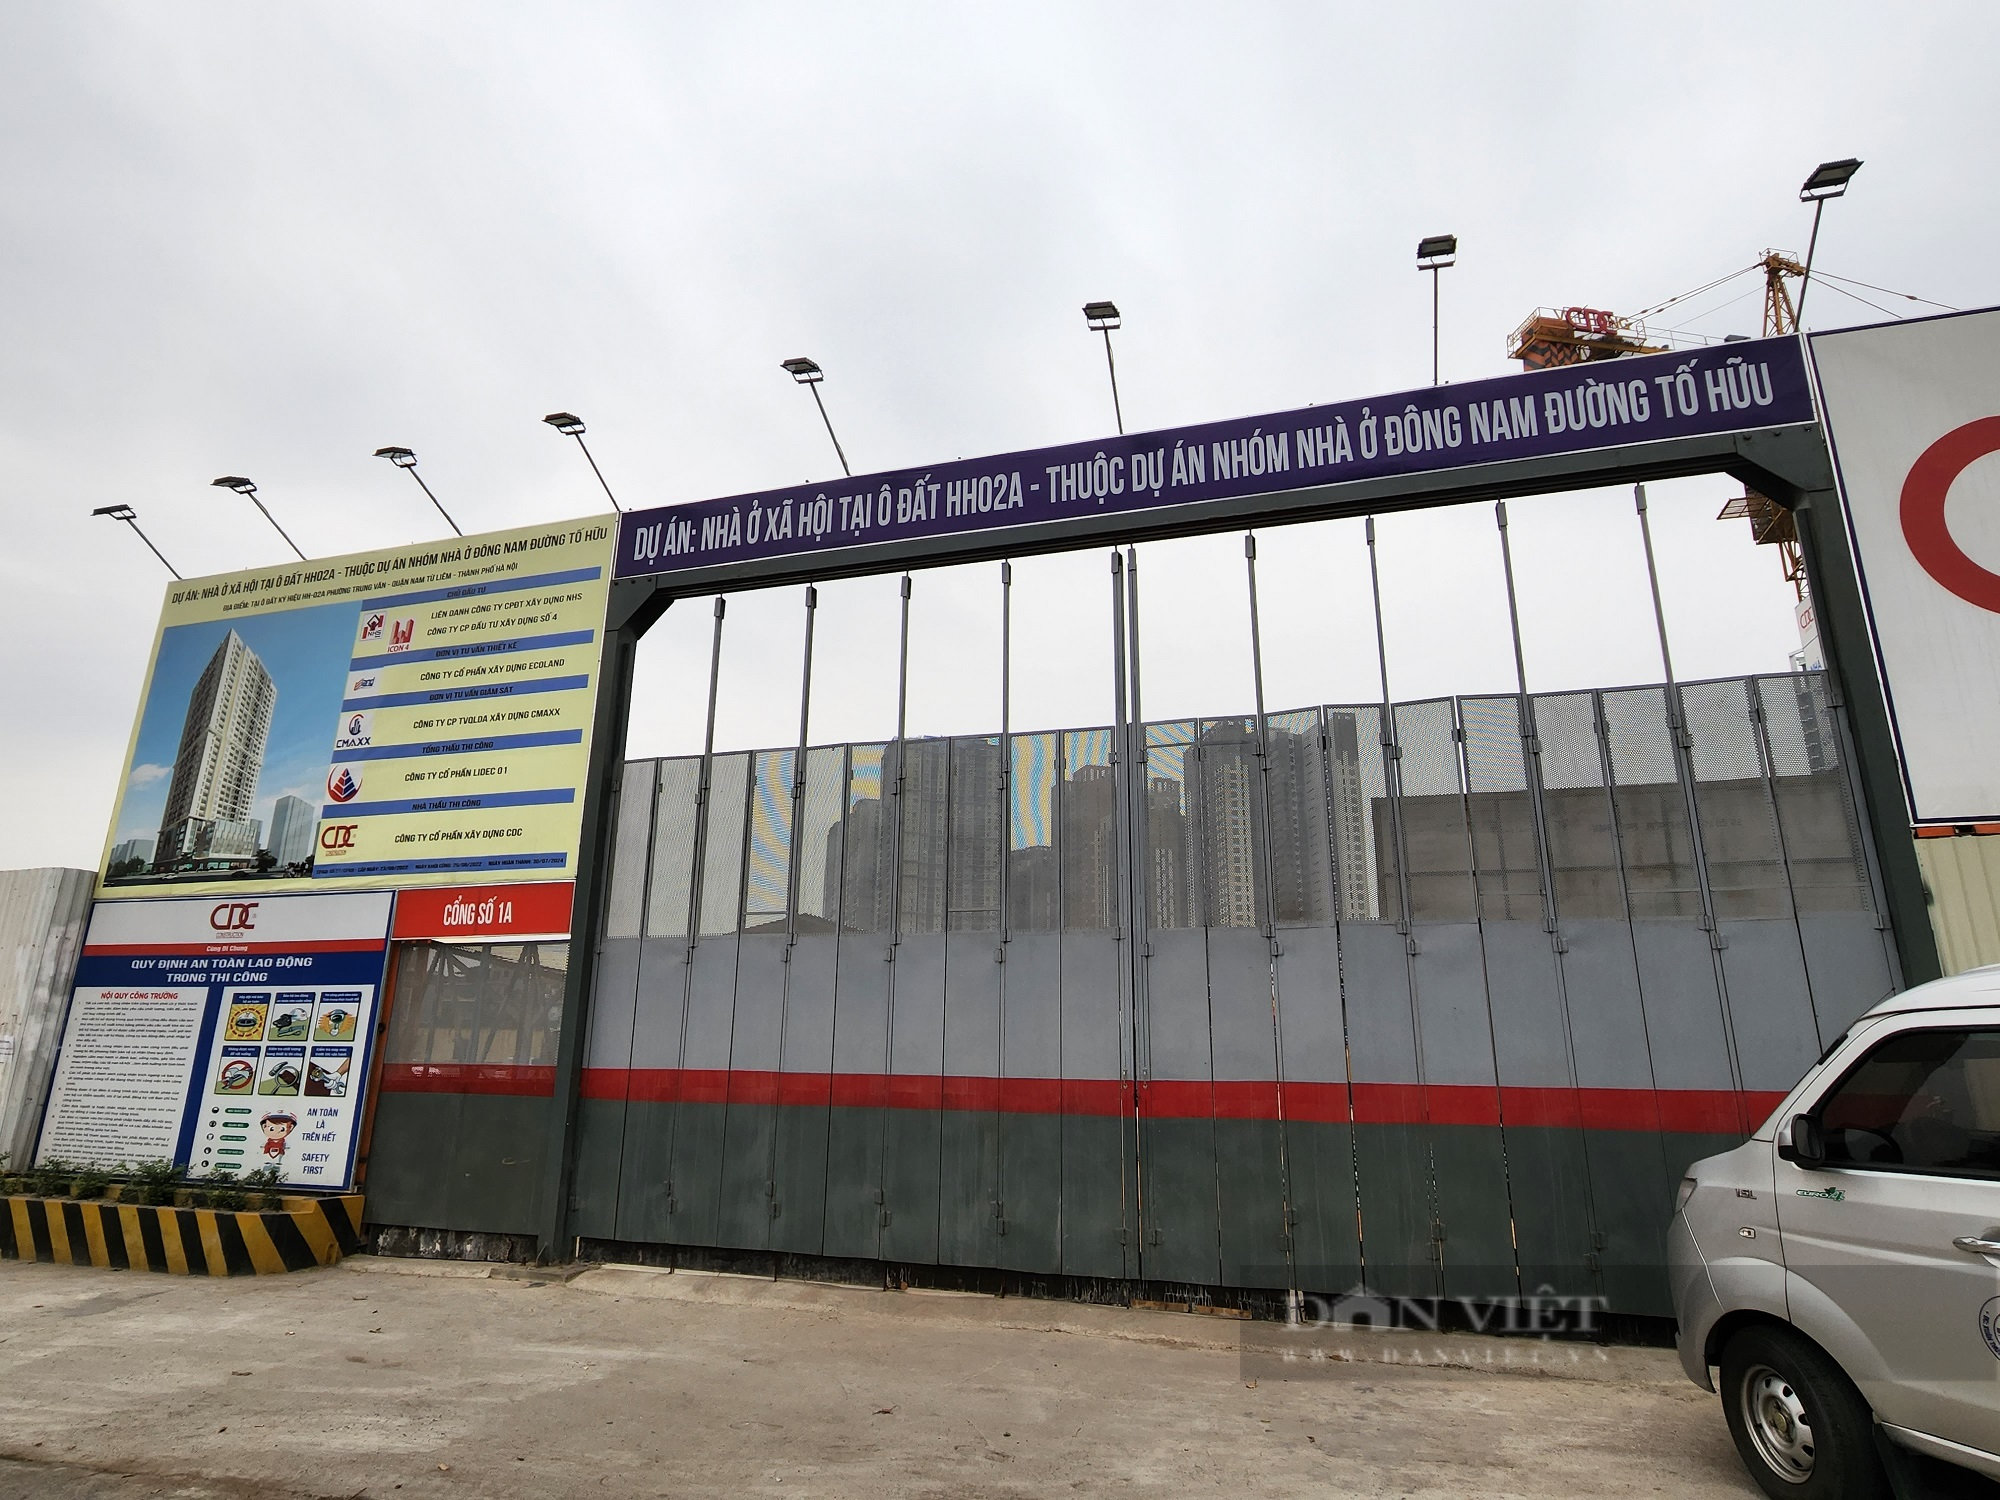 Dự án nhà ở xã hội tại Hà Nội lập kỷ lục về mức giá mở bán cao nhất - Ảnh 1.